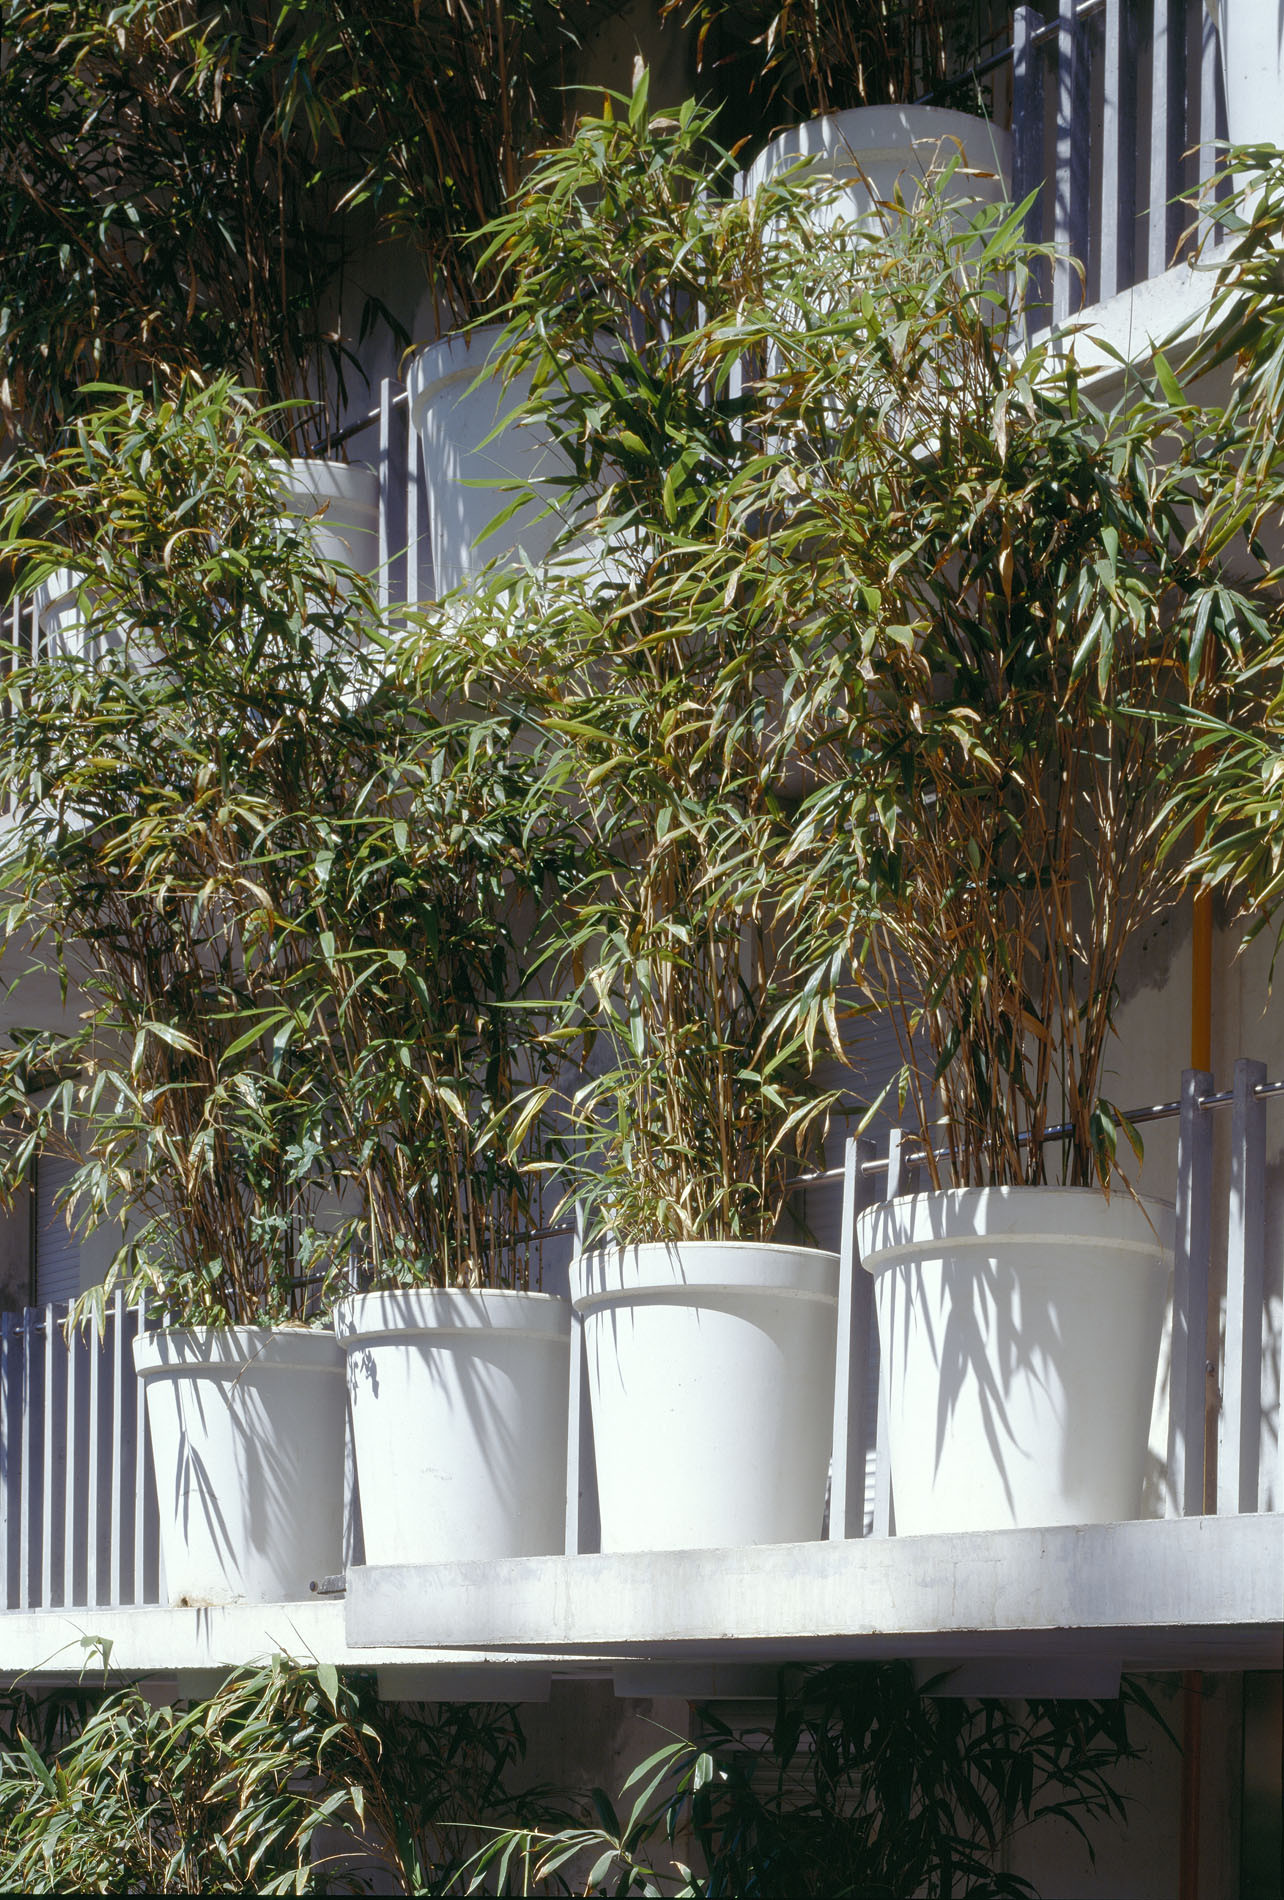 Les bambous servent d’écran végétal sur les balcons. (Photo: Paul Raftery/View Pictures)